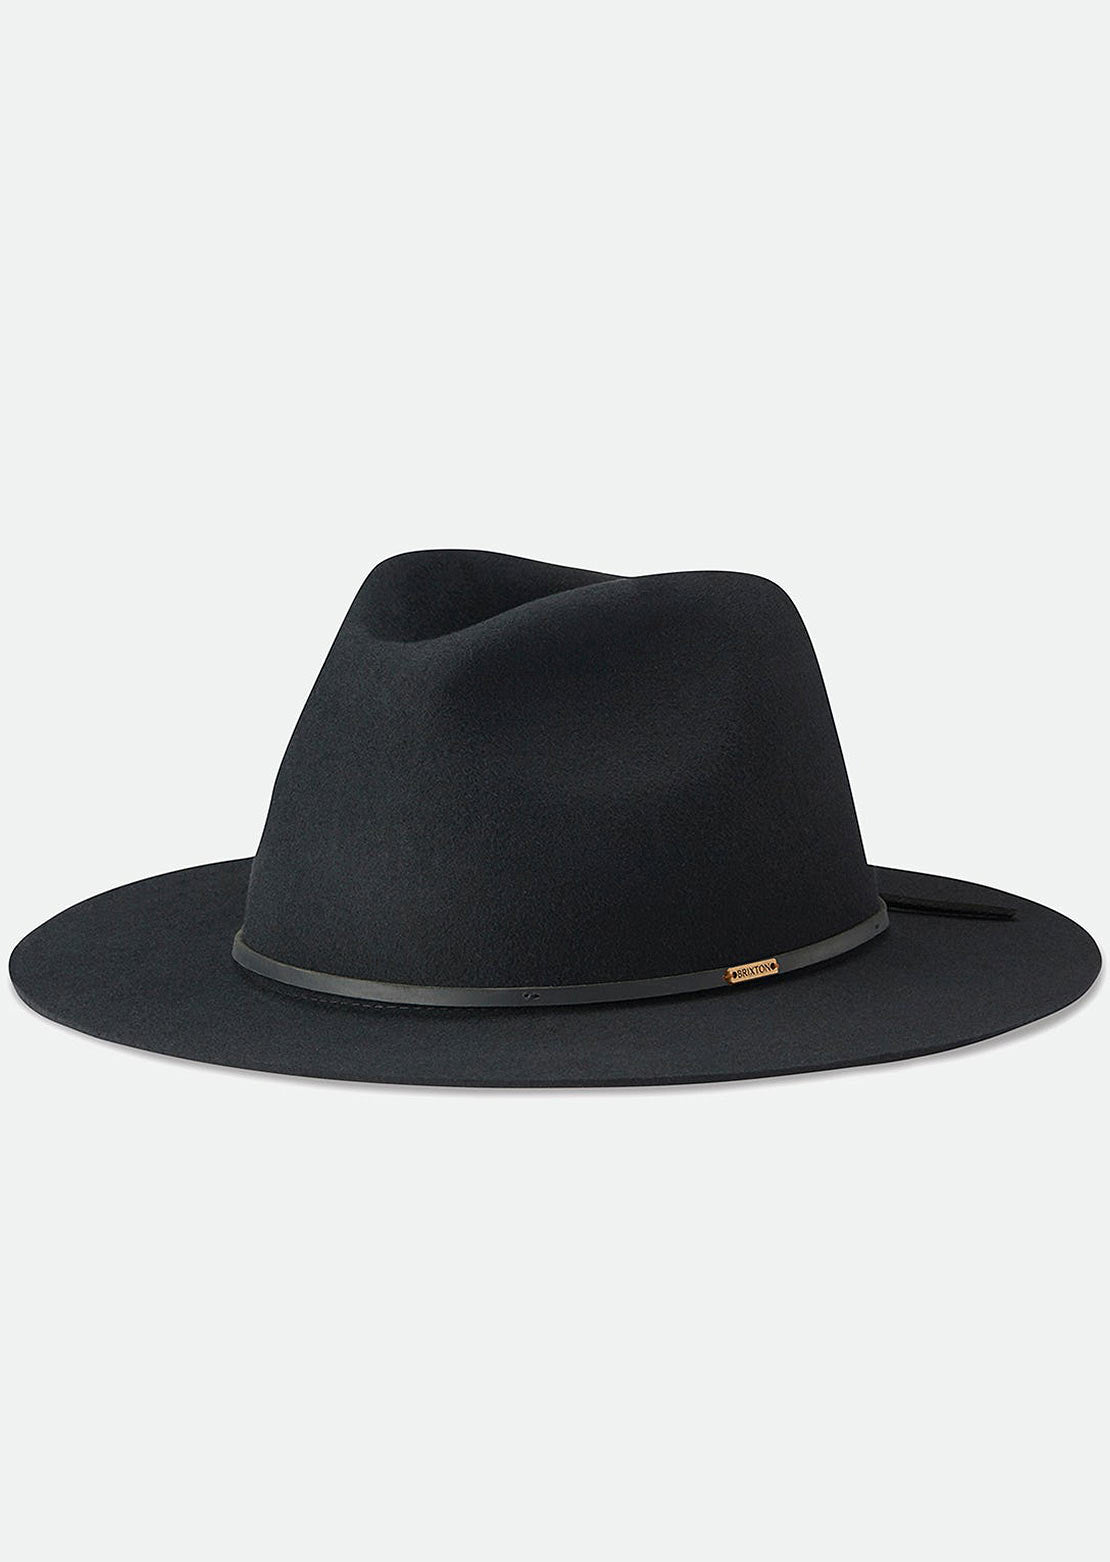 Brixton Unisex Wesley Fedora Hat Black